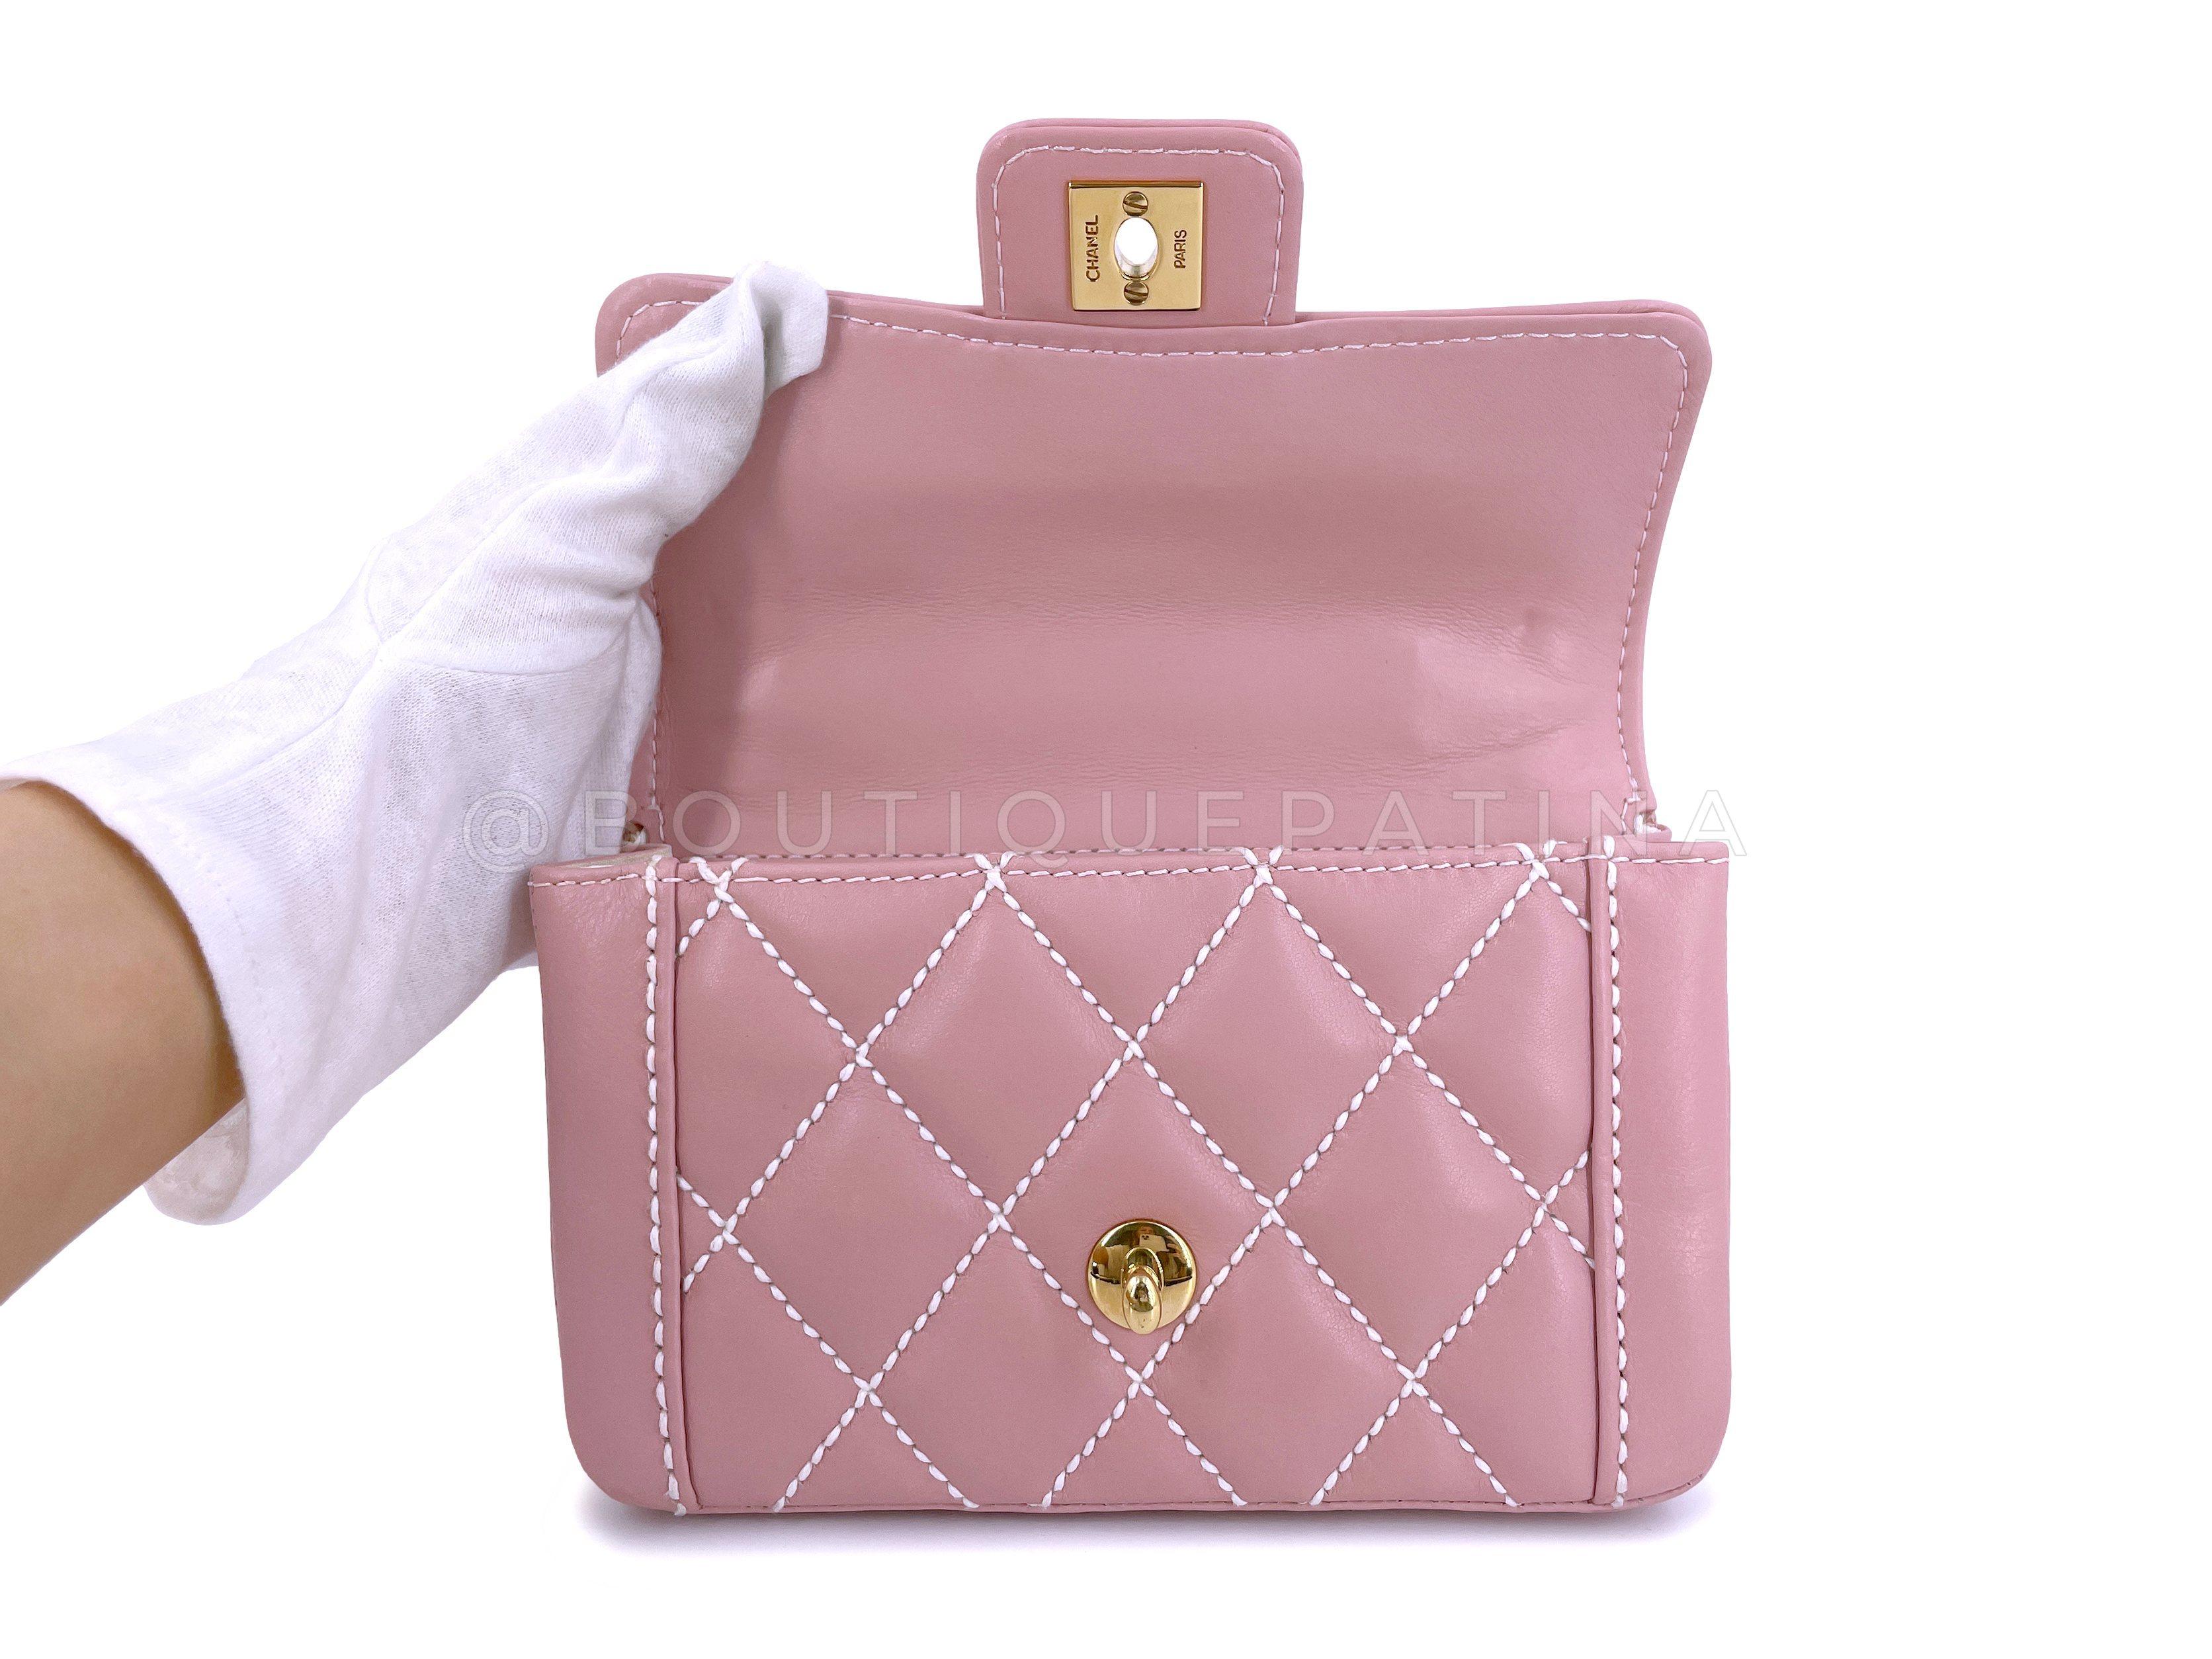 Women's Rare Chanel Mauve Pink Wild Stitch Surpique Baby Flap Bag 66463 For Sale